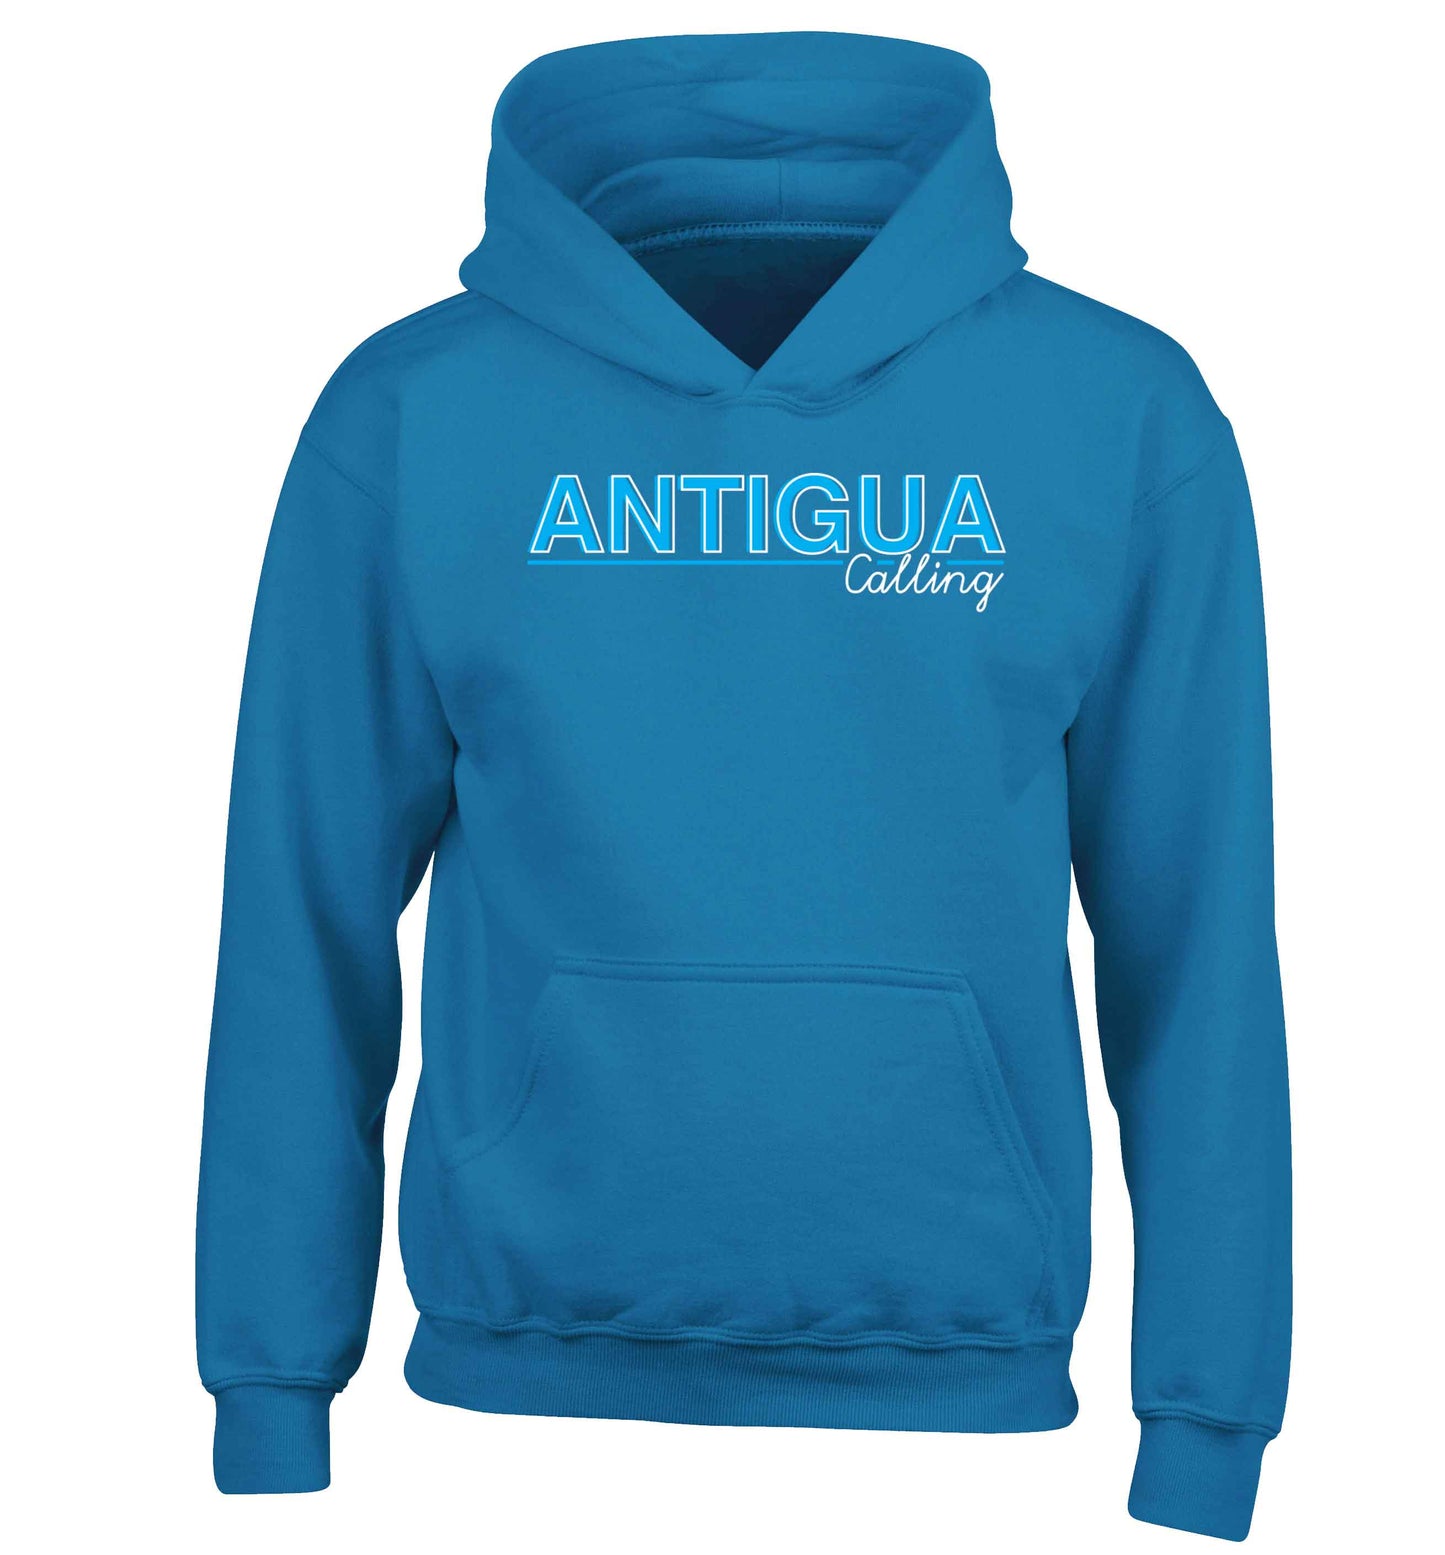 Antigua calling children's blue hoodie 12-13 Years